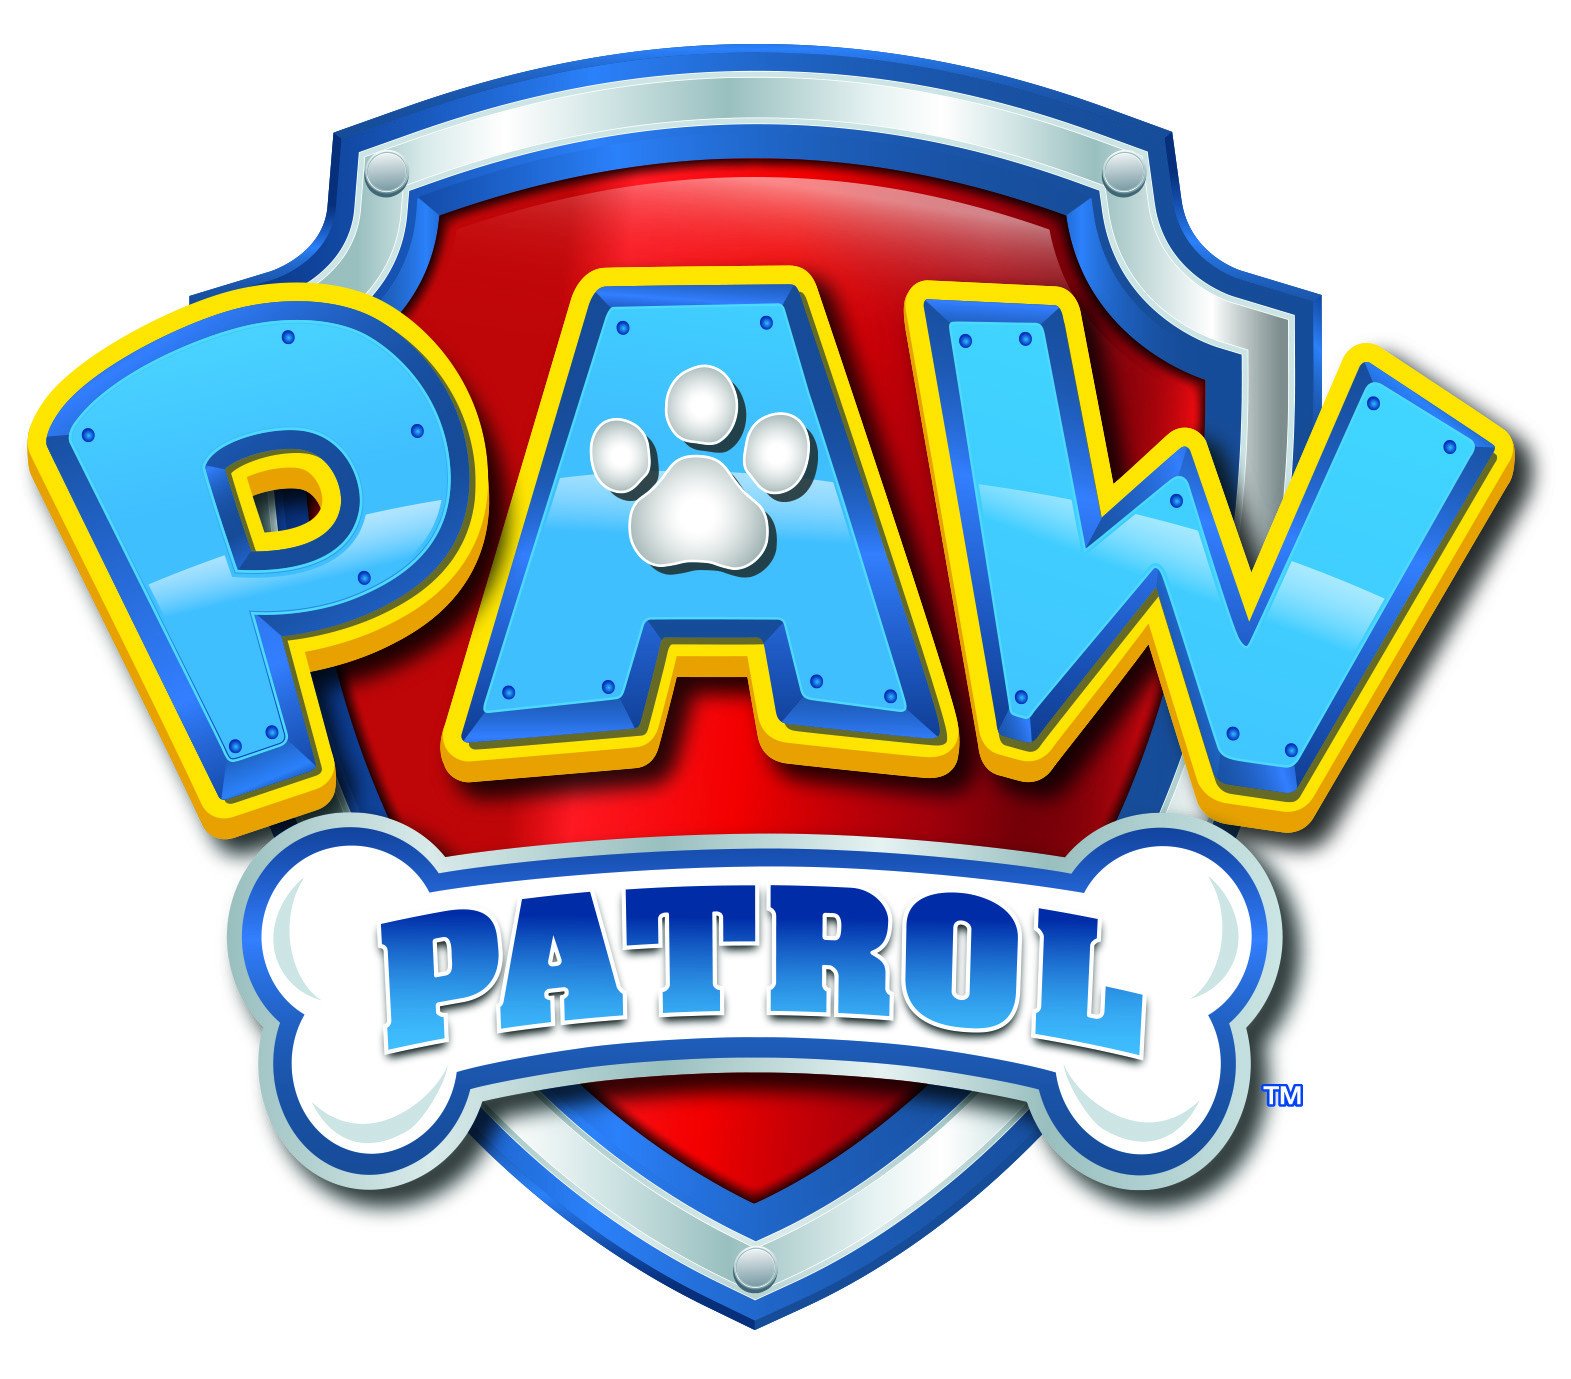  Paw Patrol - La Pat Patrouille